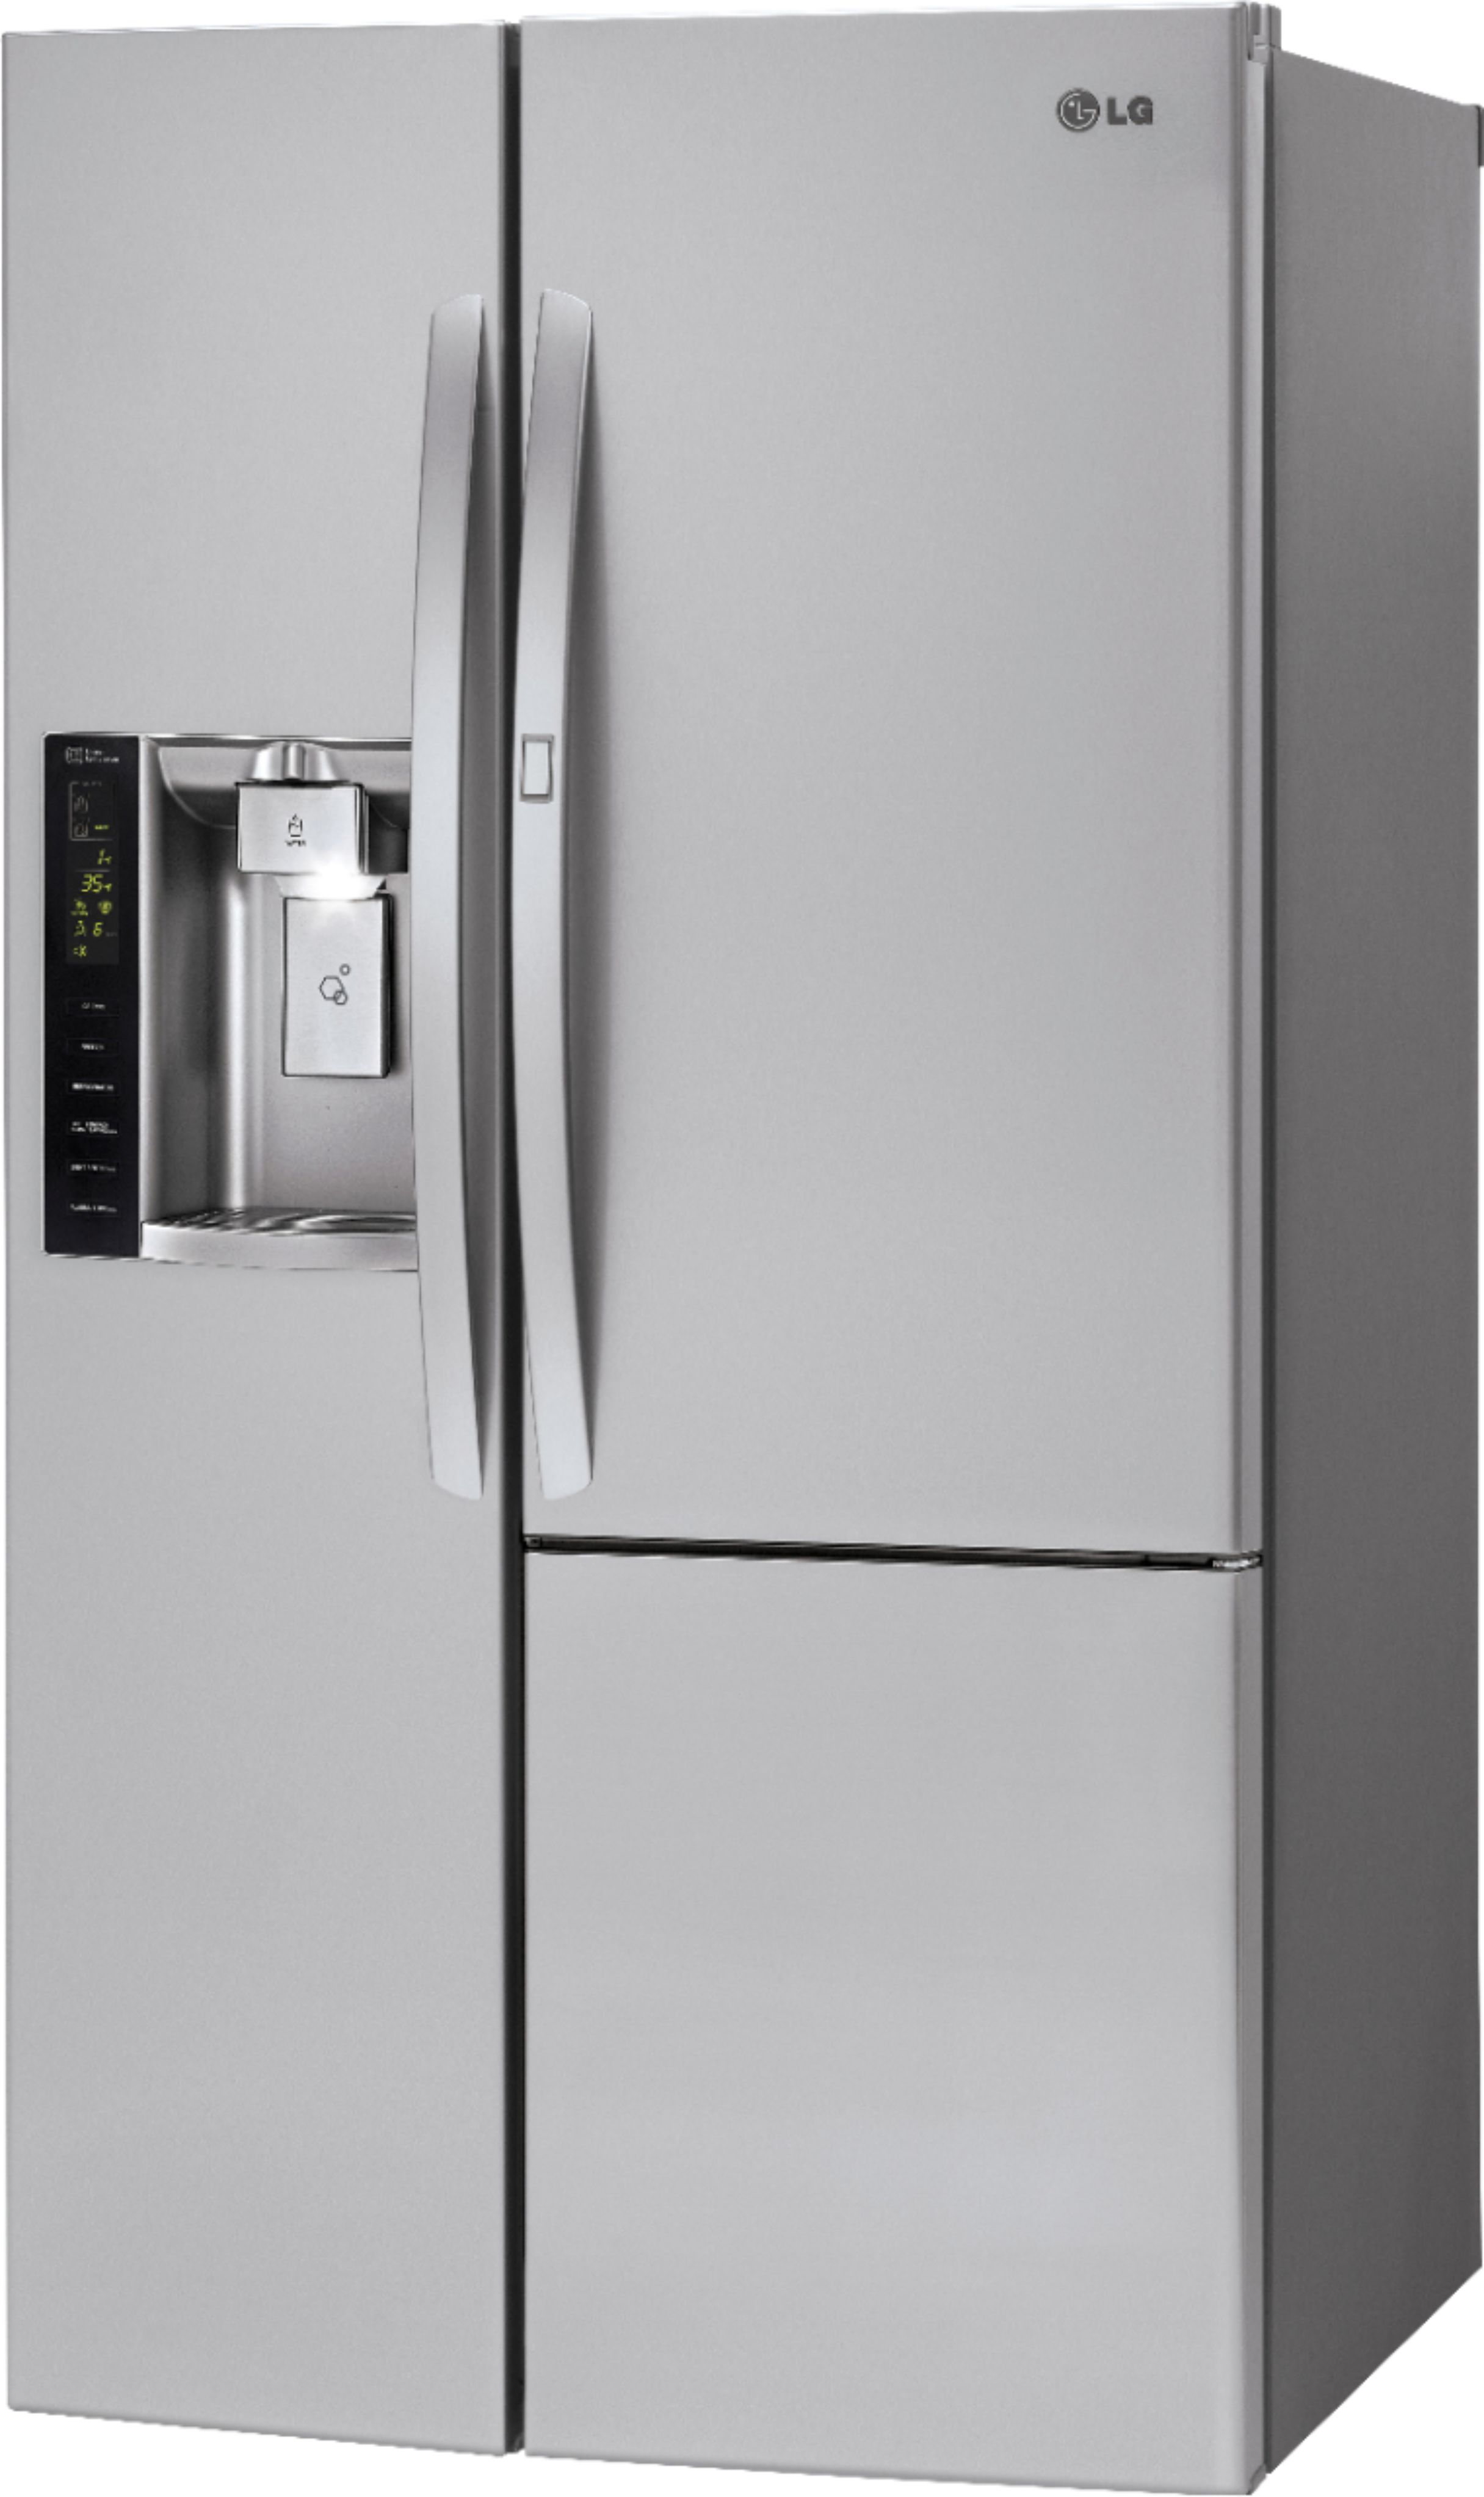 Left View: LG - 26 Cu. Ft. Door-in-Door Side-by-Side Refrigerator with Thru-the-Door Ice and Water - Stainless Steel